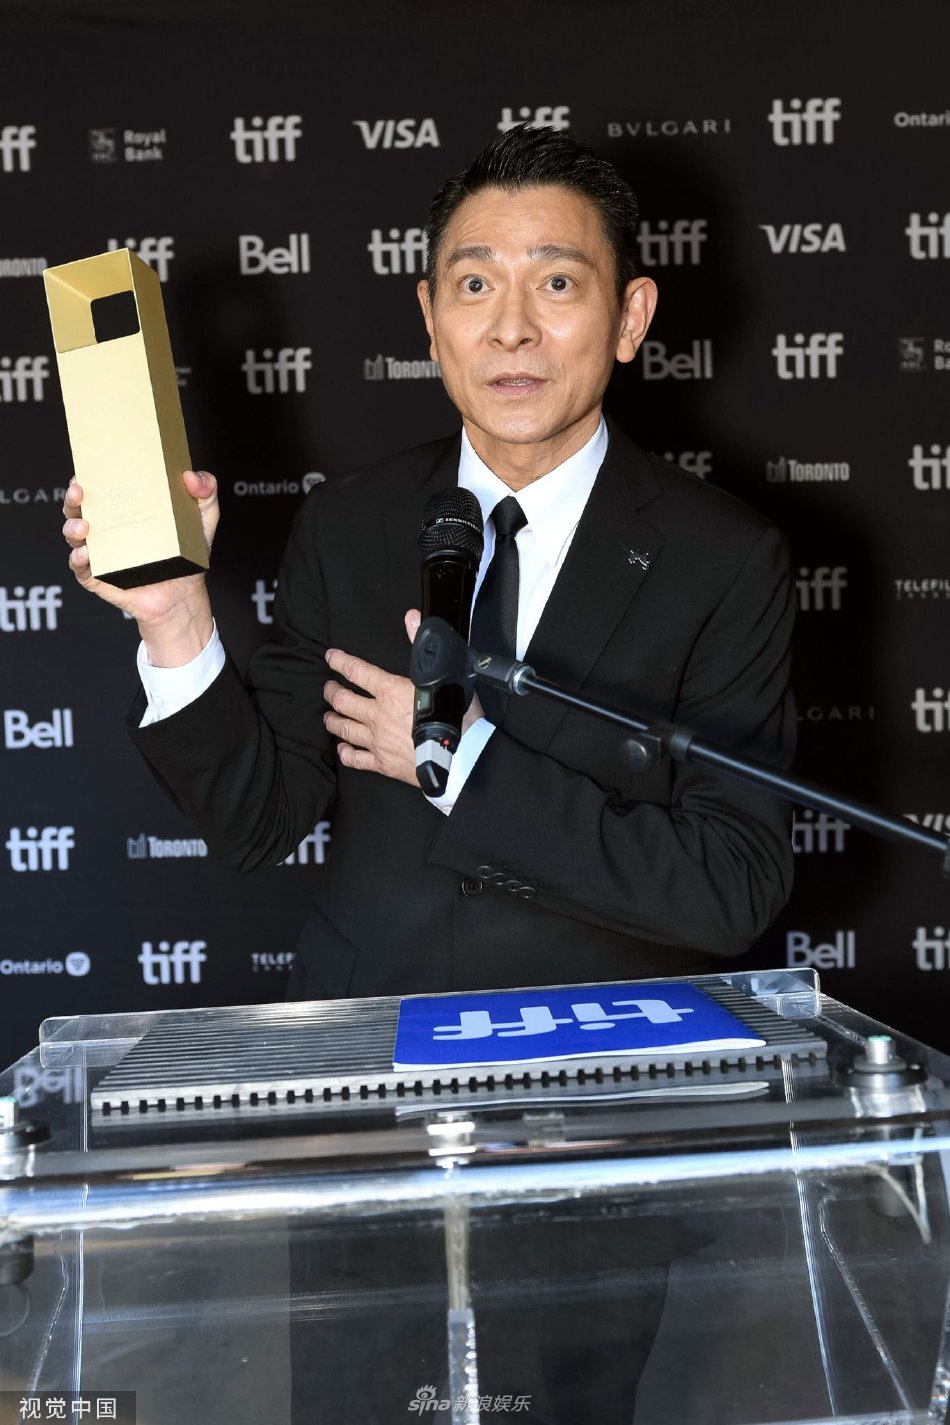 第48届多伦多电影节 刘德华获特别贡献奖并出席颁奖典礼